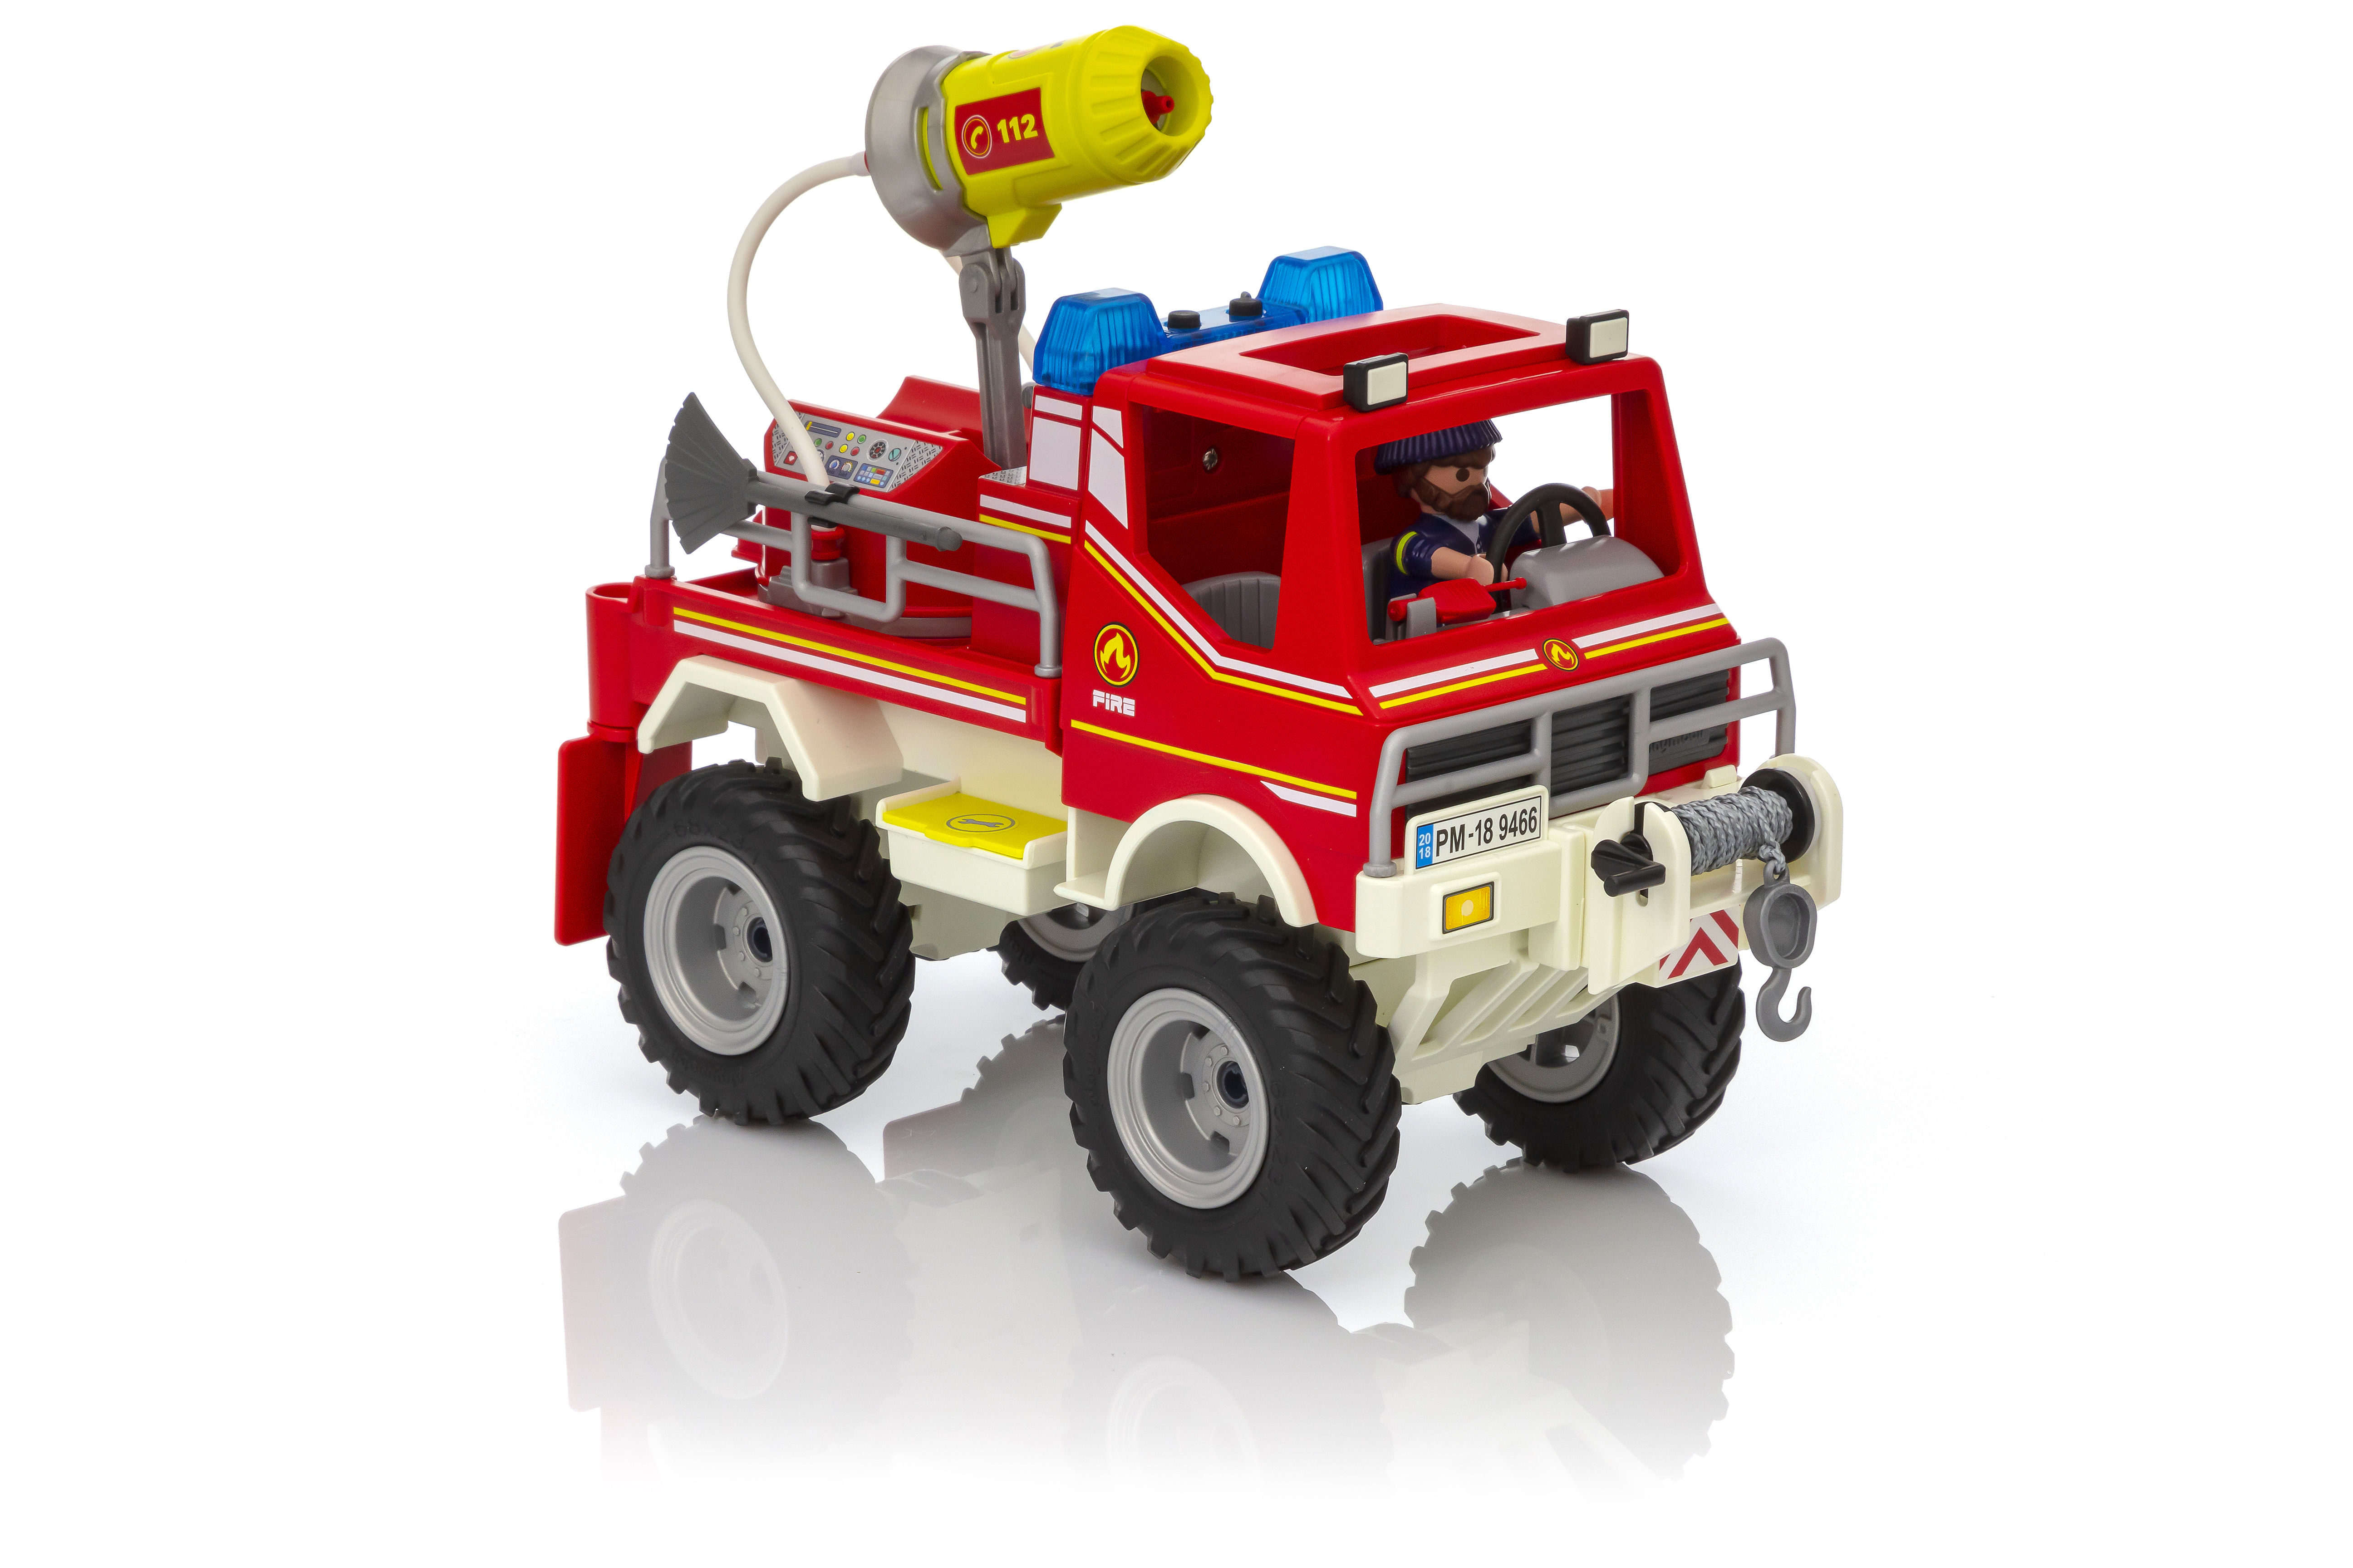 Playmobil City Action 4X4 de pompier avec lance-eau 9466